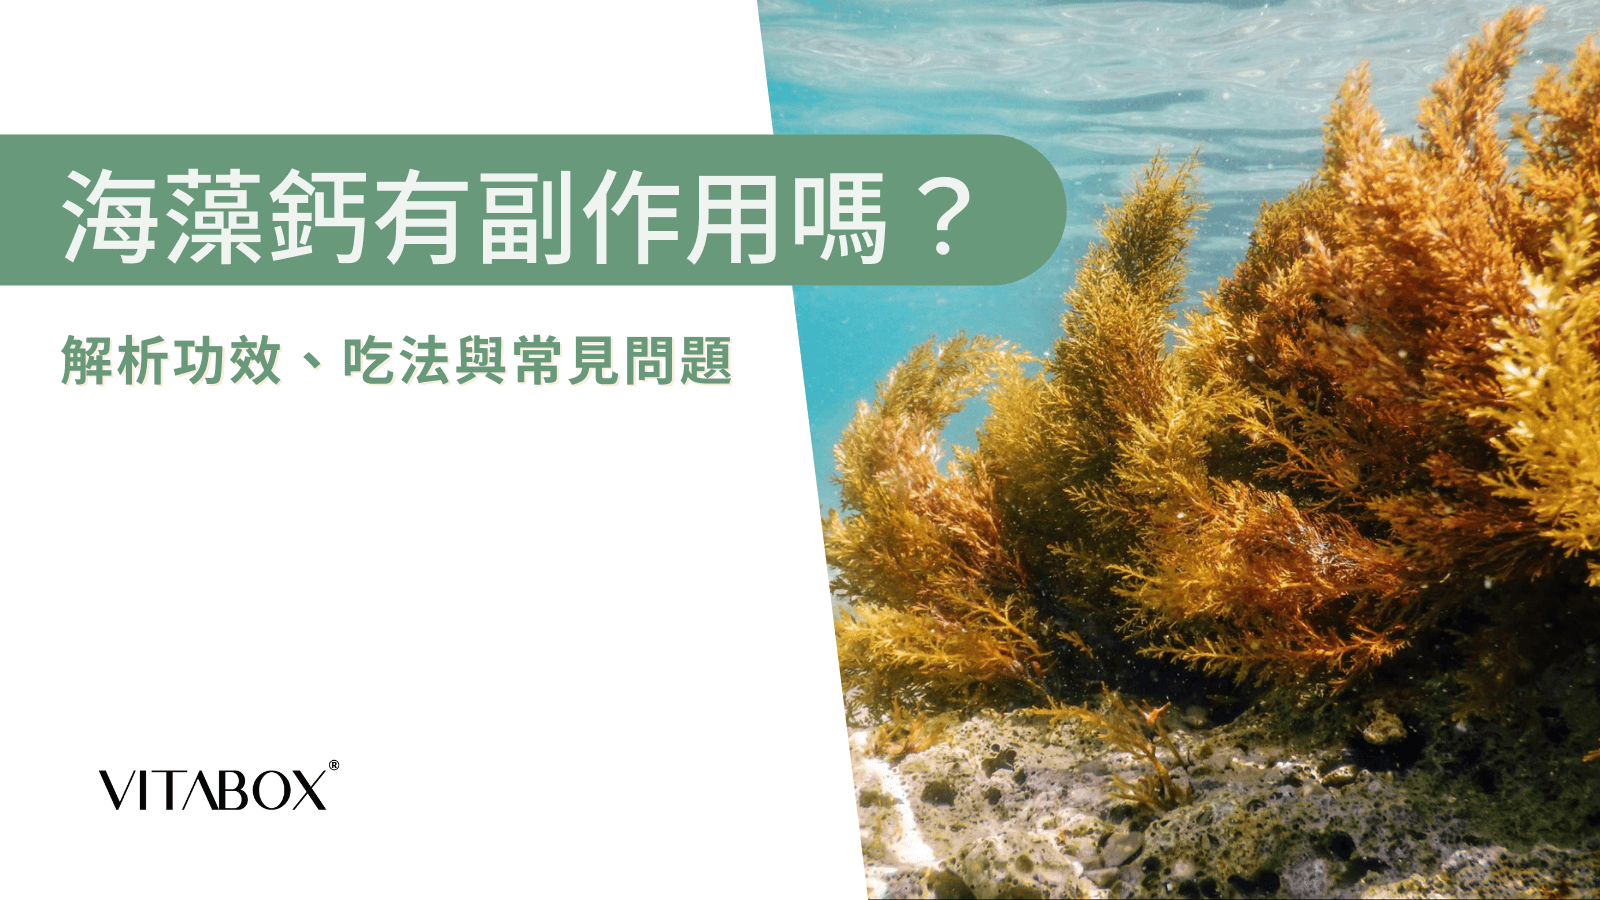 海藻鈣是什麼？萃取自紅藻的鈣質來源